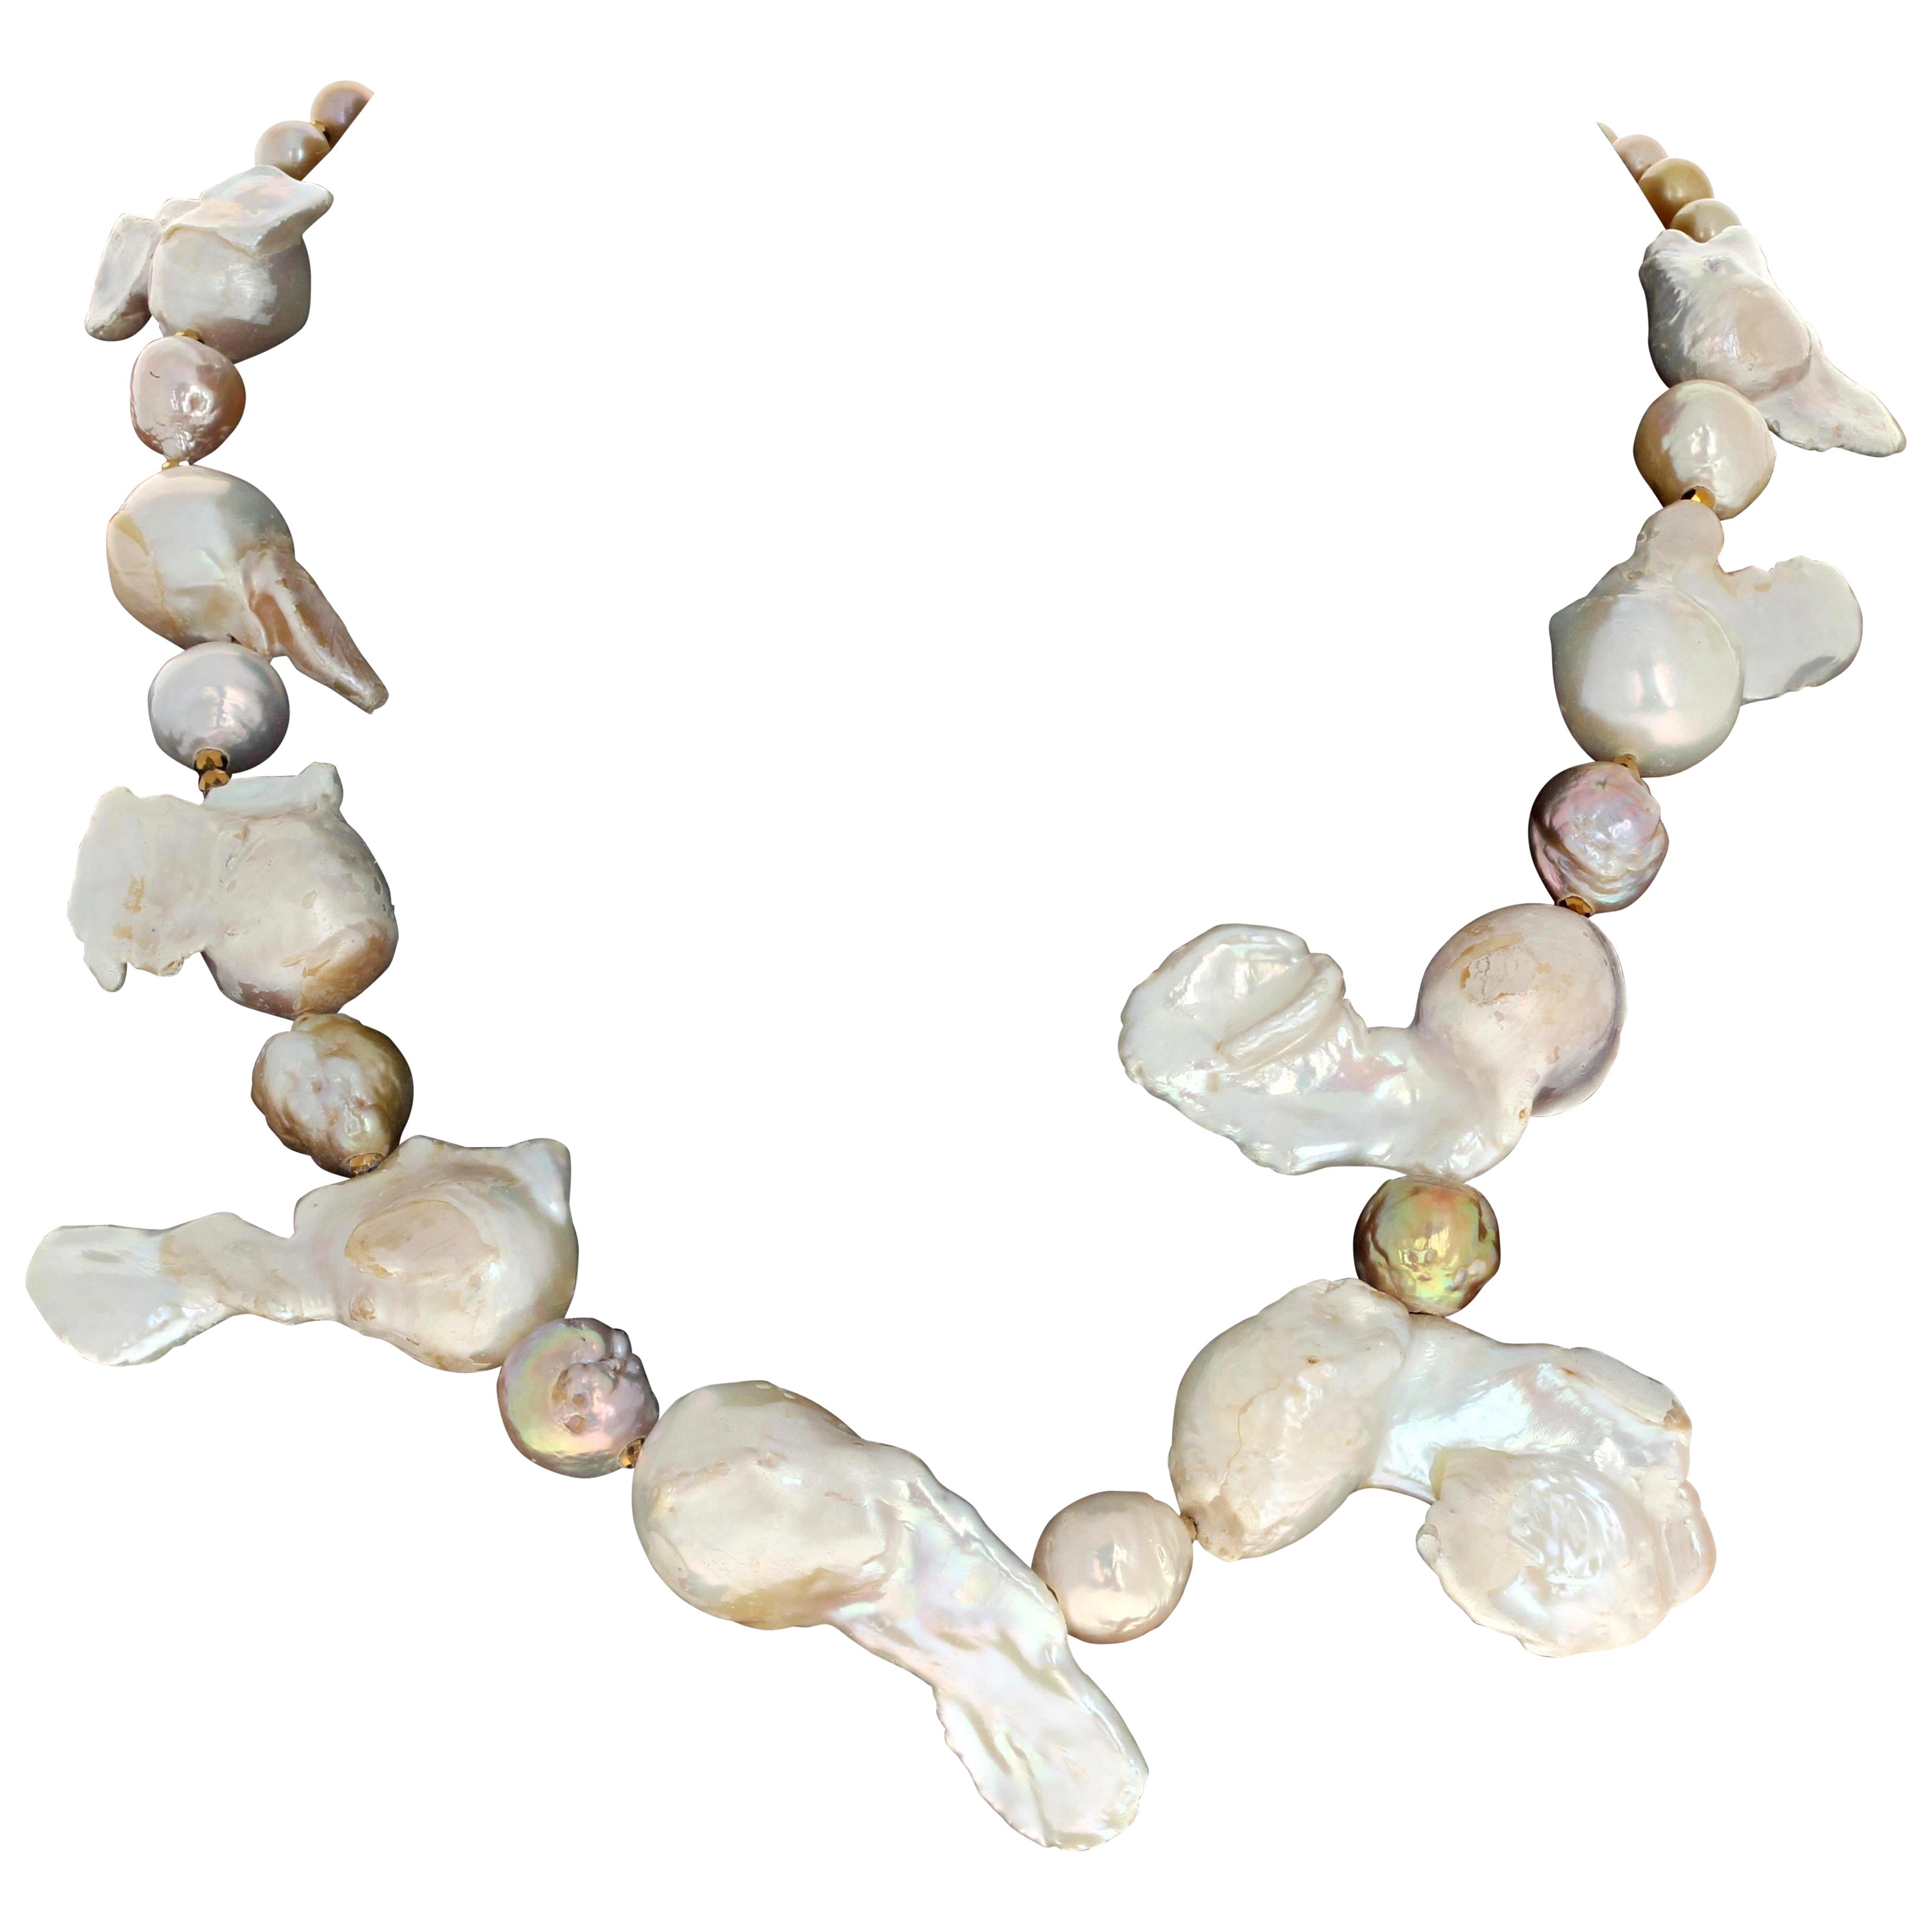 Ce collier fascinant mesure 18 1/2 pouces de long.  Les perles sont naturelles, tout comme elles ont poussé de façon si étrange et spectaculaire dans leur coquille naturelle.  Les parties rondes mesurent environ 18 mm et elles mesurent environ 40 mm